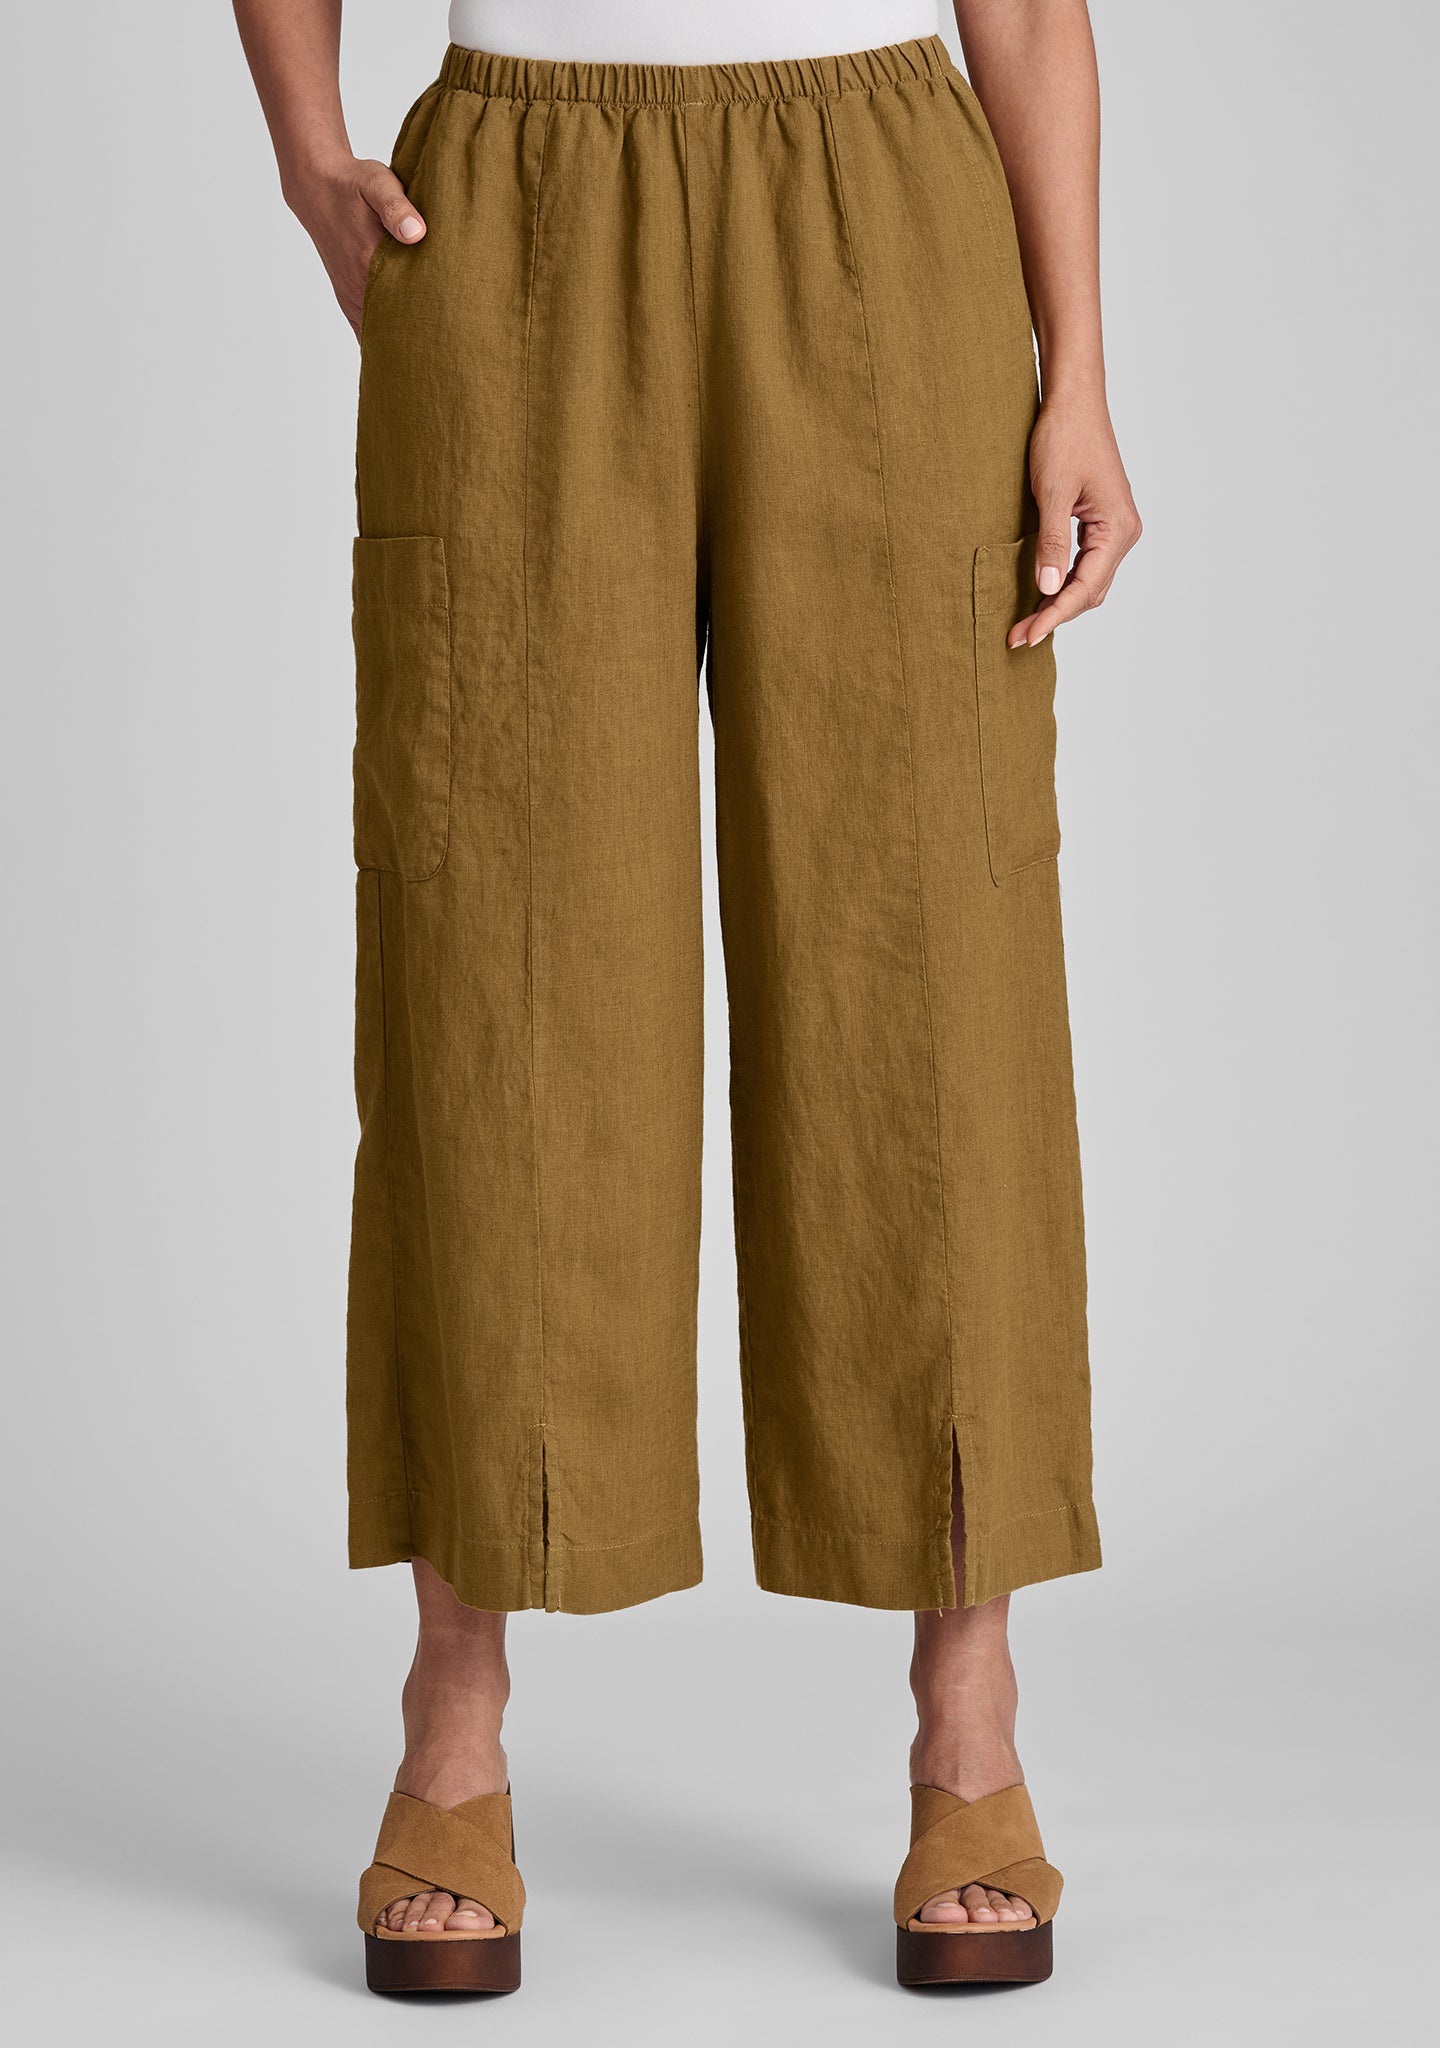 modern flood linen pants with elastic waist details